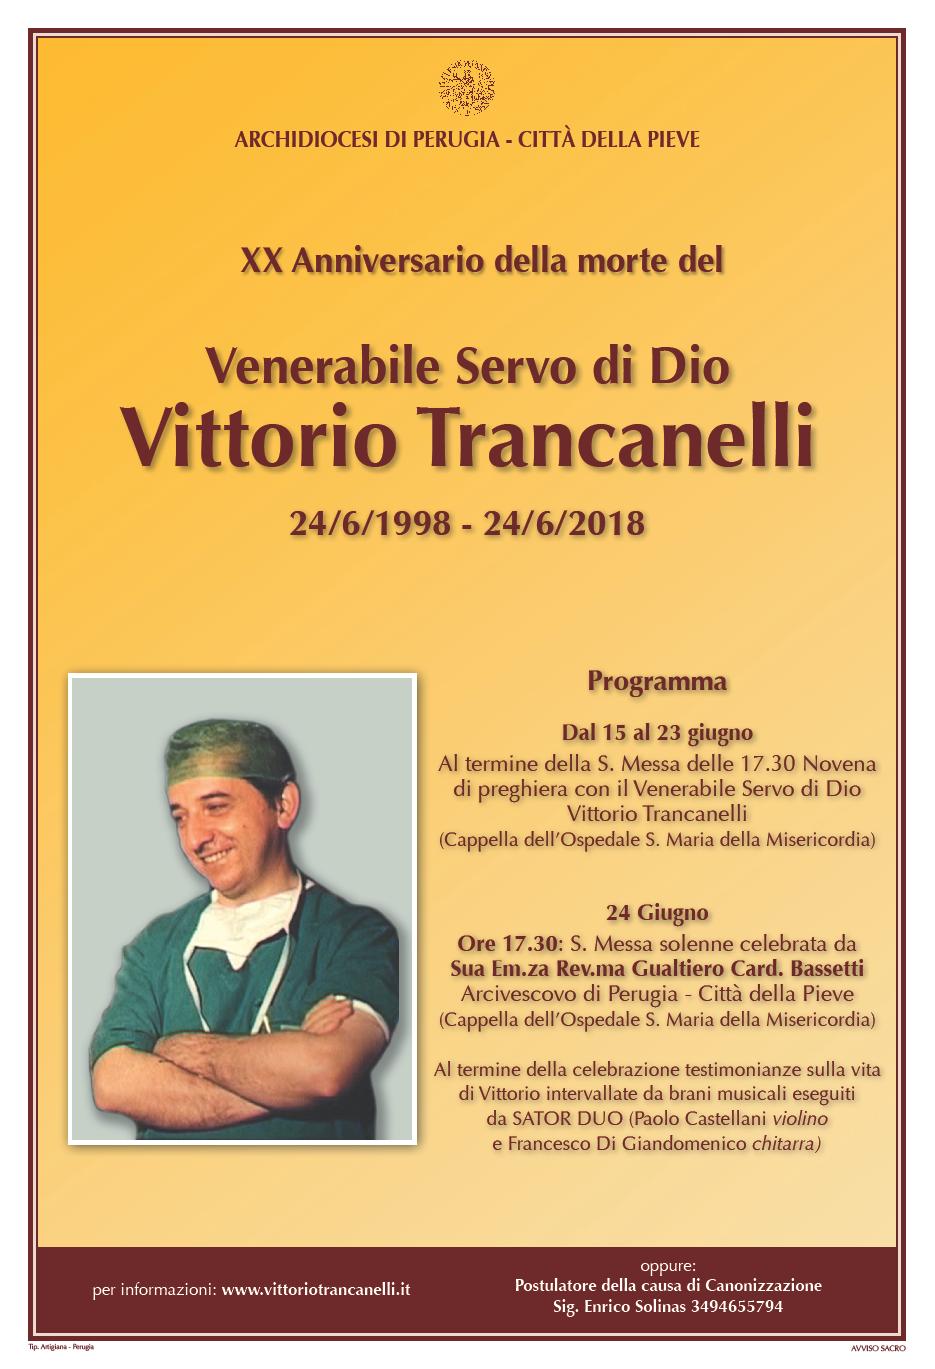 VittorioTrancanelli